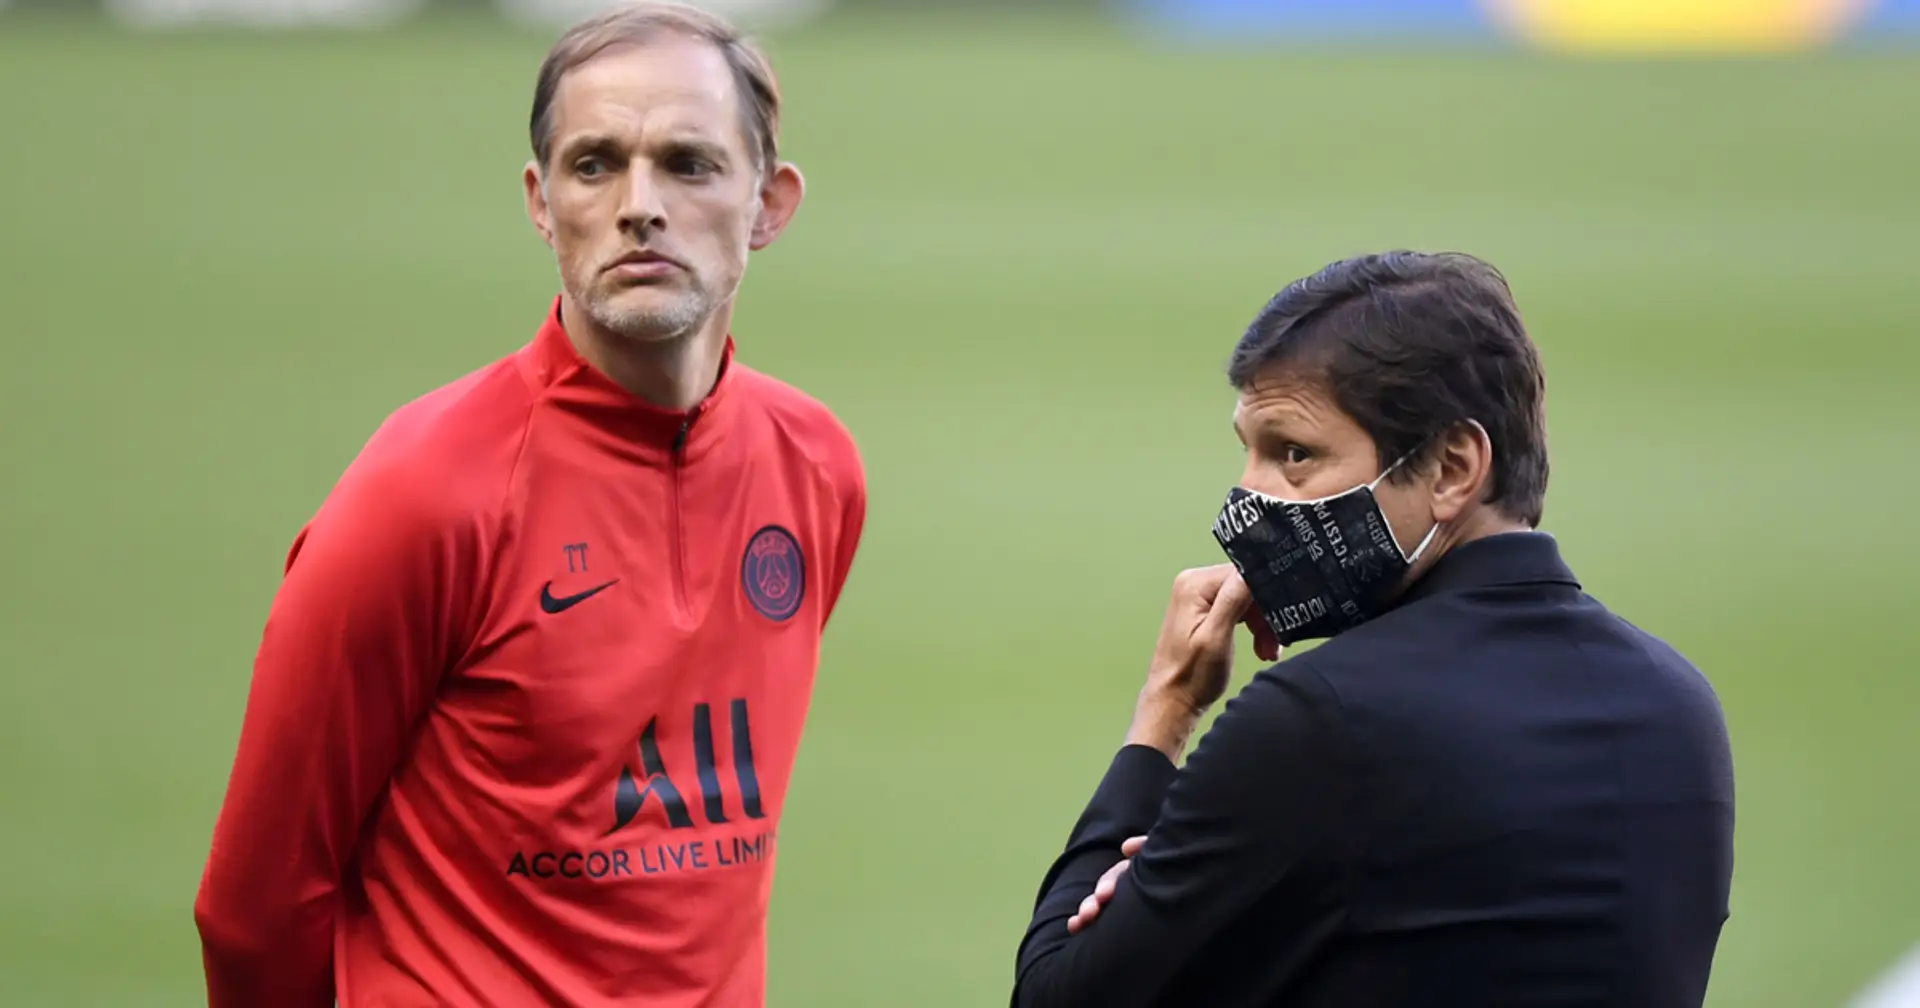 Leonardo et Tuchel réuni dans la douleur? L'Equipe parle de relations apaisées entre les deux hommes fort du PSG